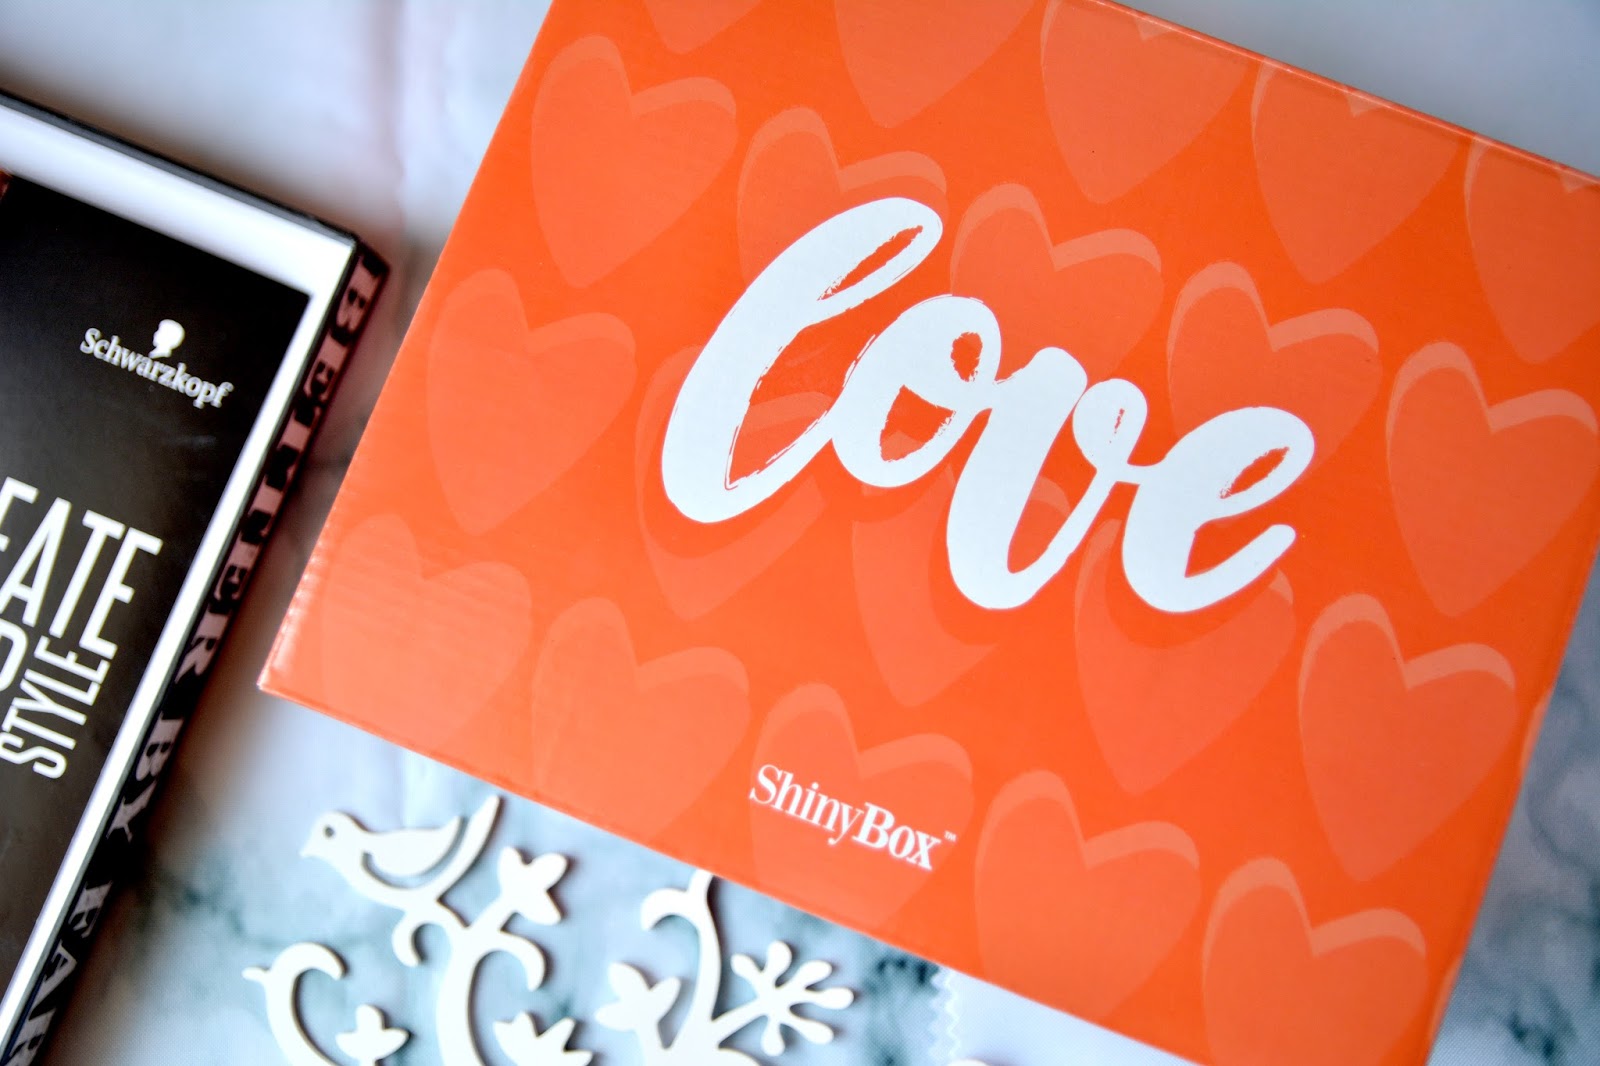 Wredna z wyboru: SHINYBOX LOVE AND CREATE YOUR STYLE Czy więcej znaczy lepiej? Czy pokochałam podwójne pudełko?